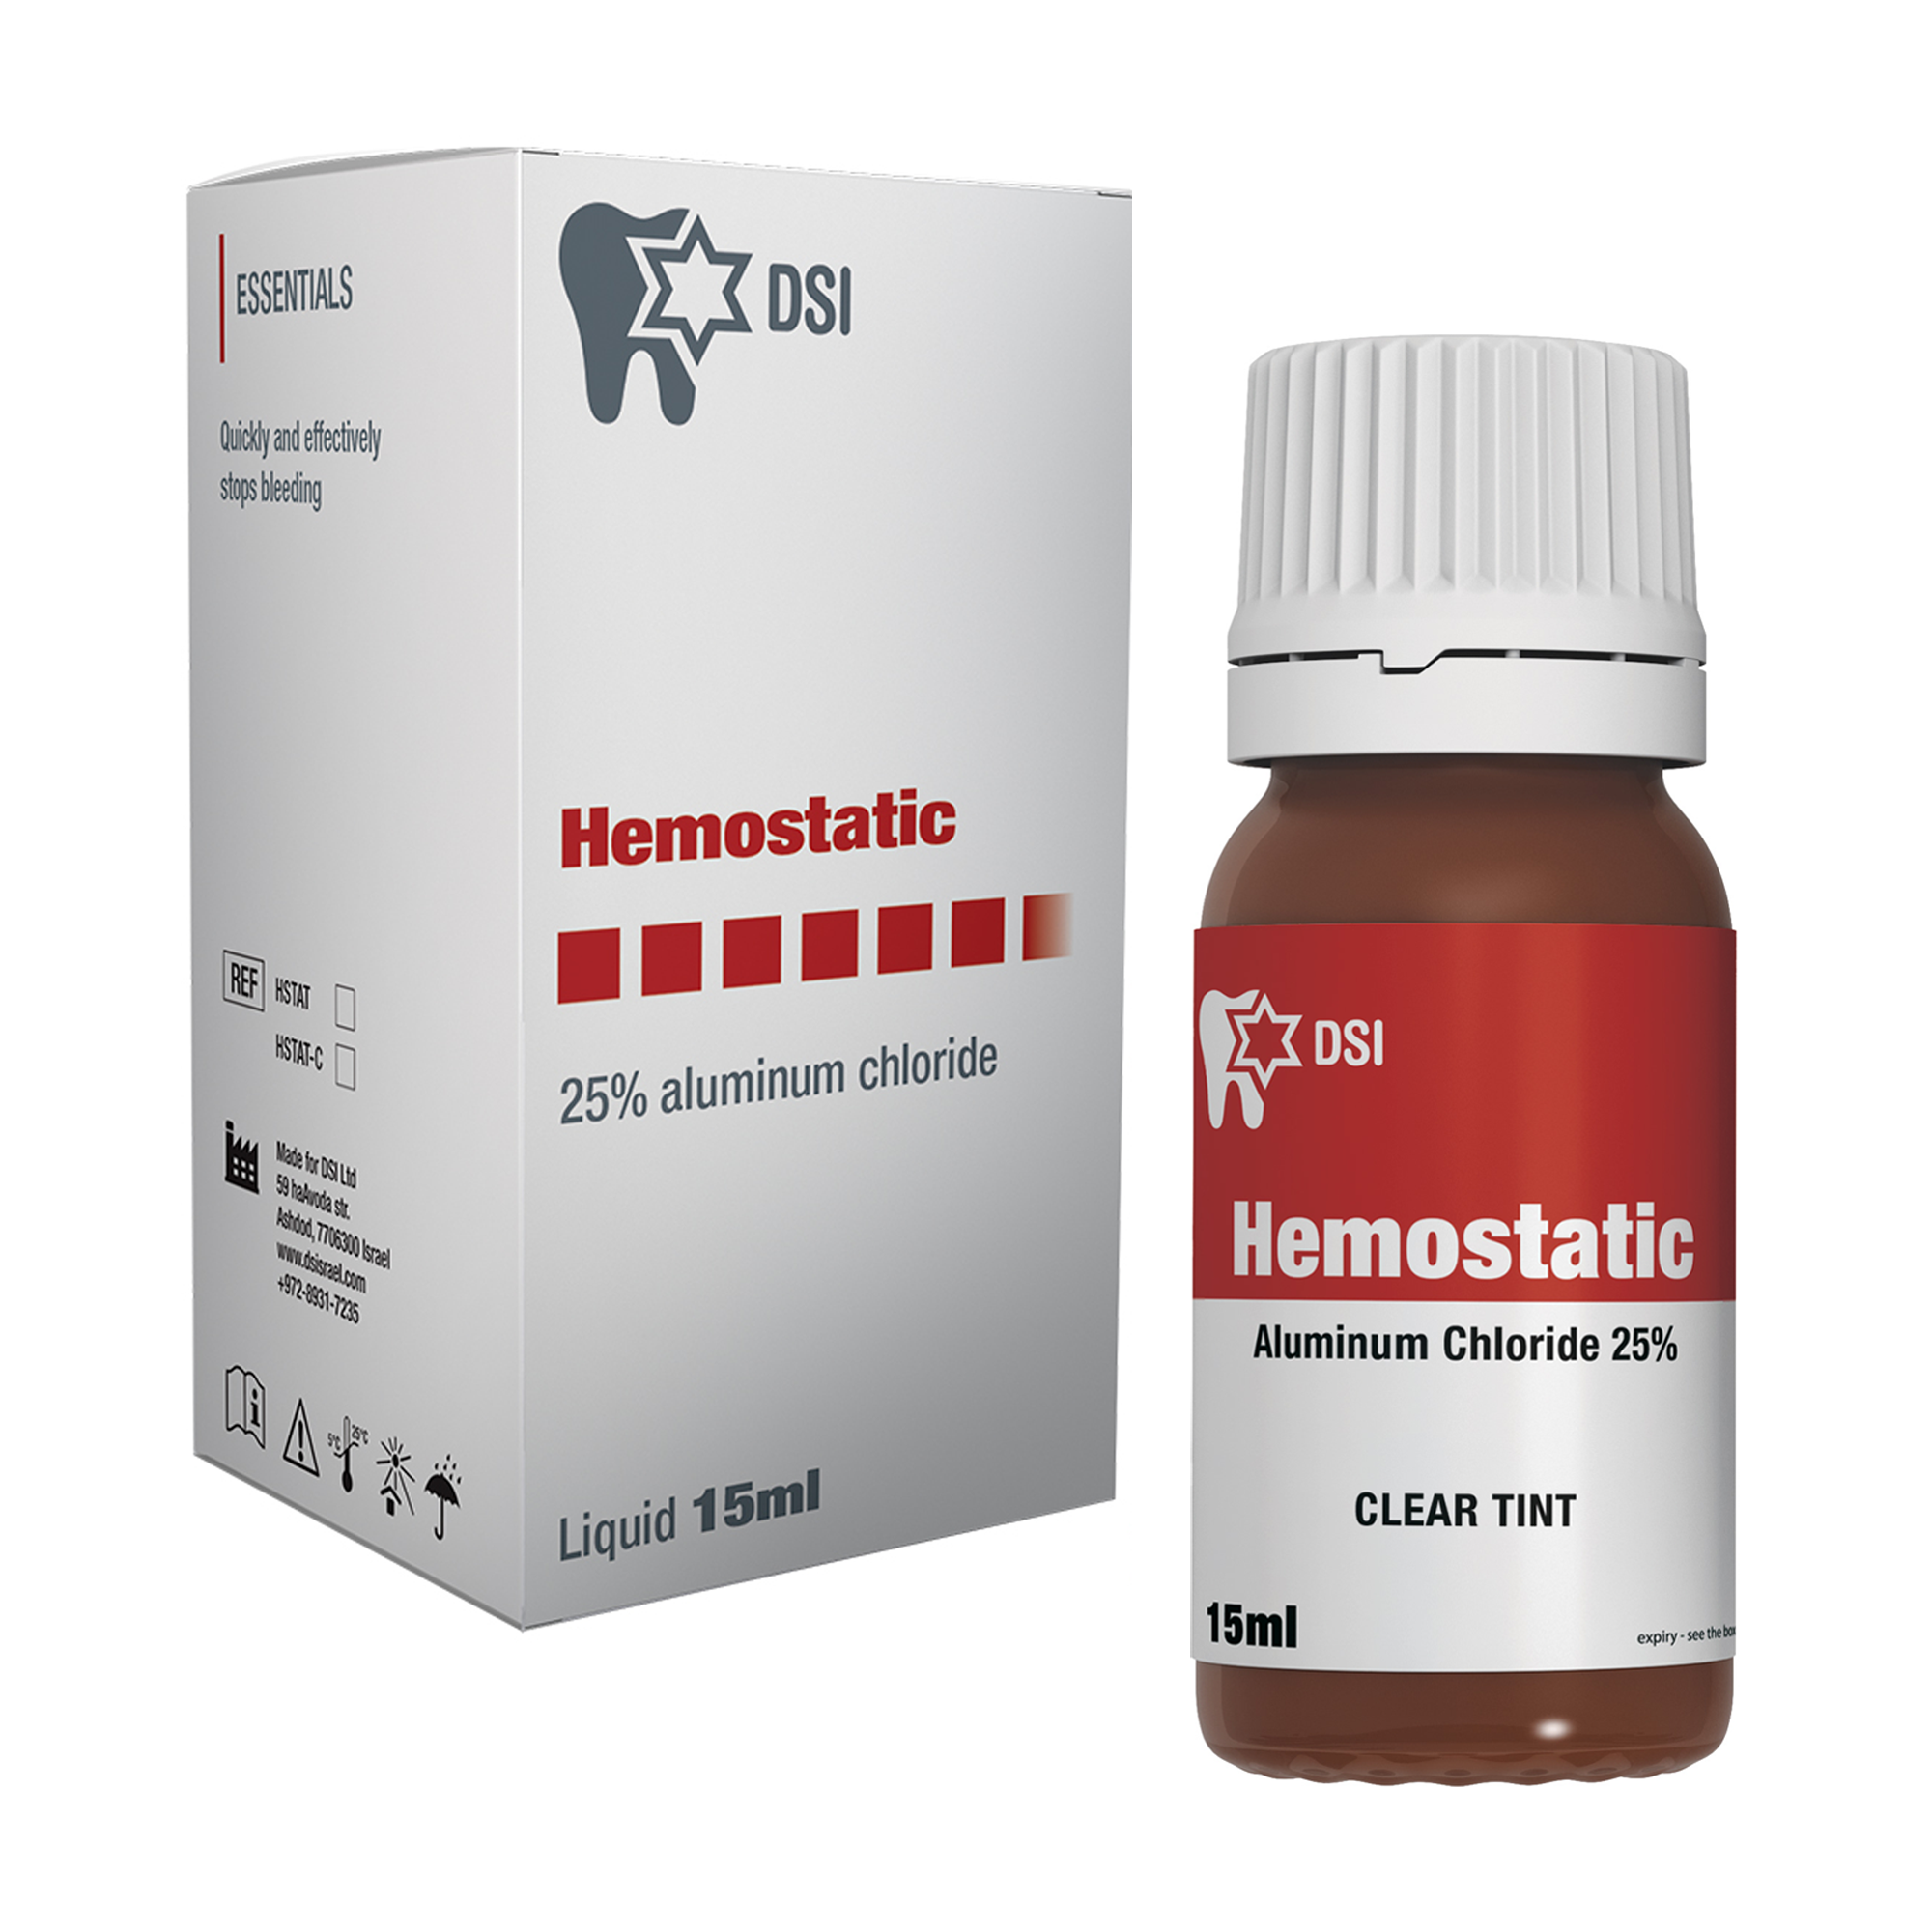 DSI Hemostatic Liquid 25% aluminum chloride Stops Bleeding 15ml Bottle